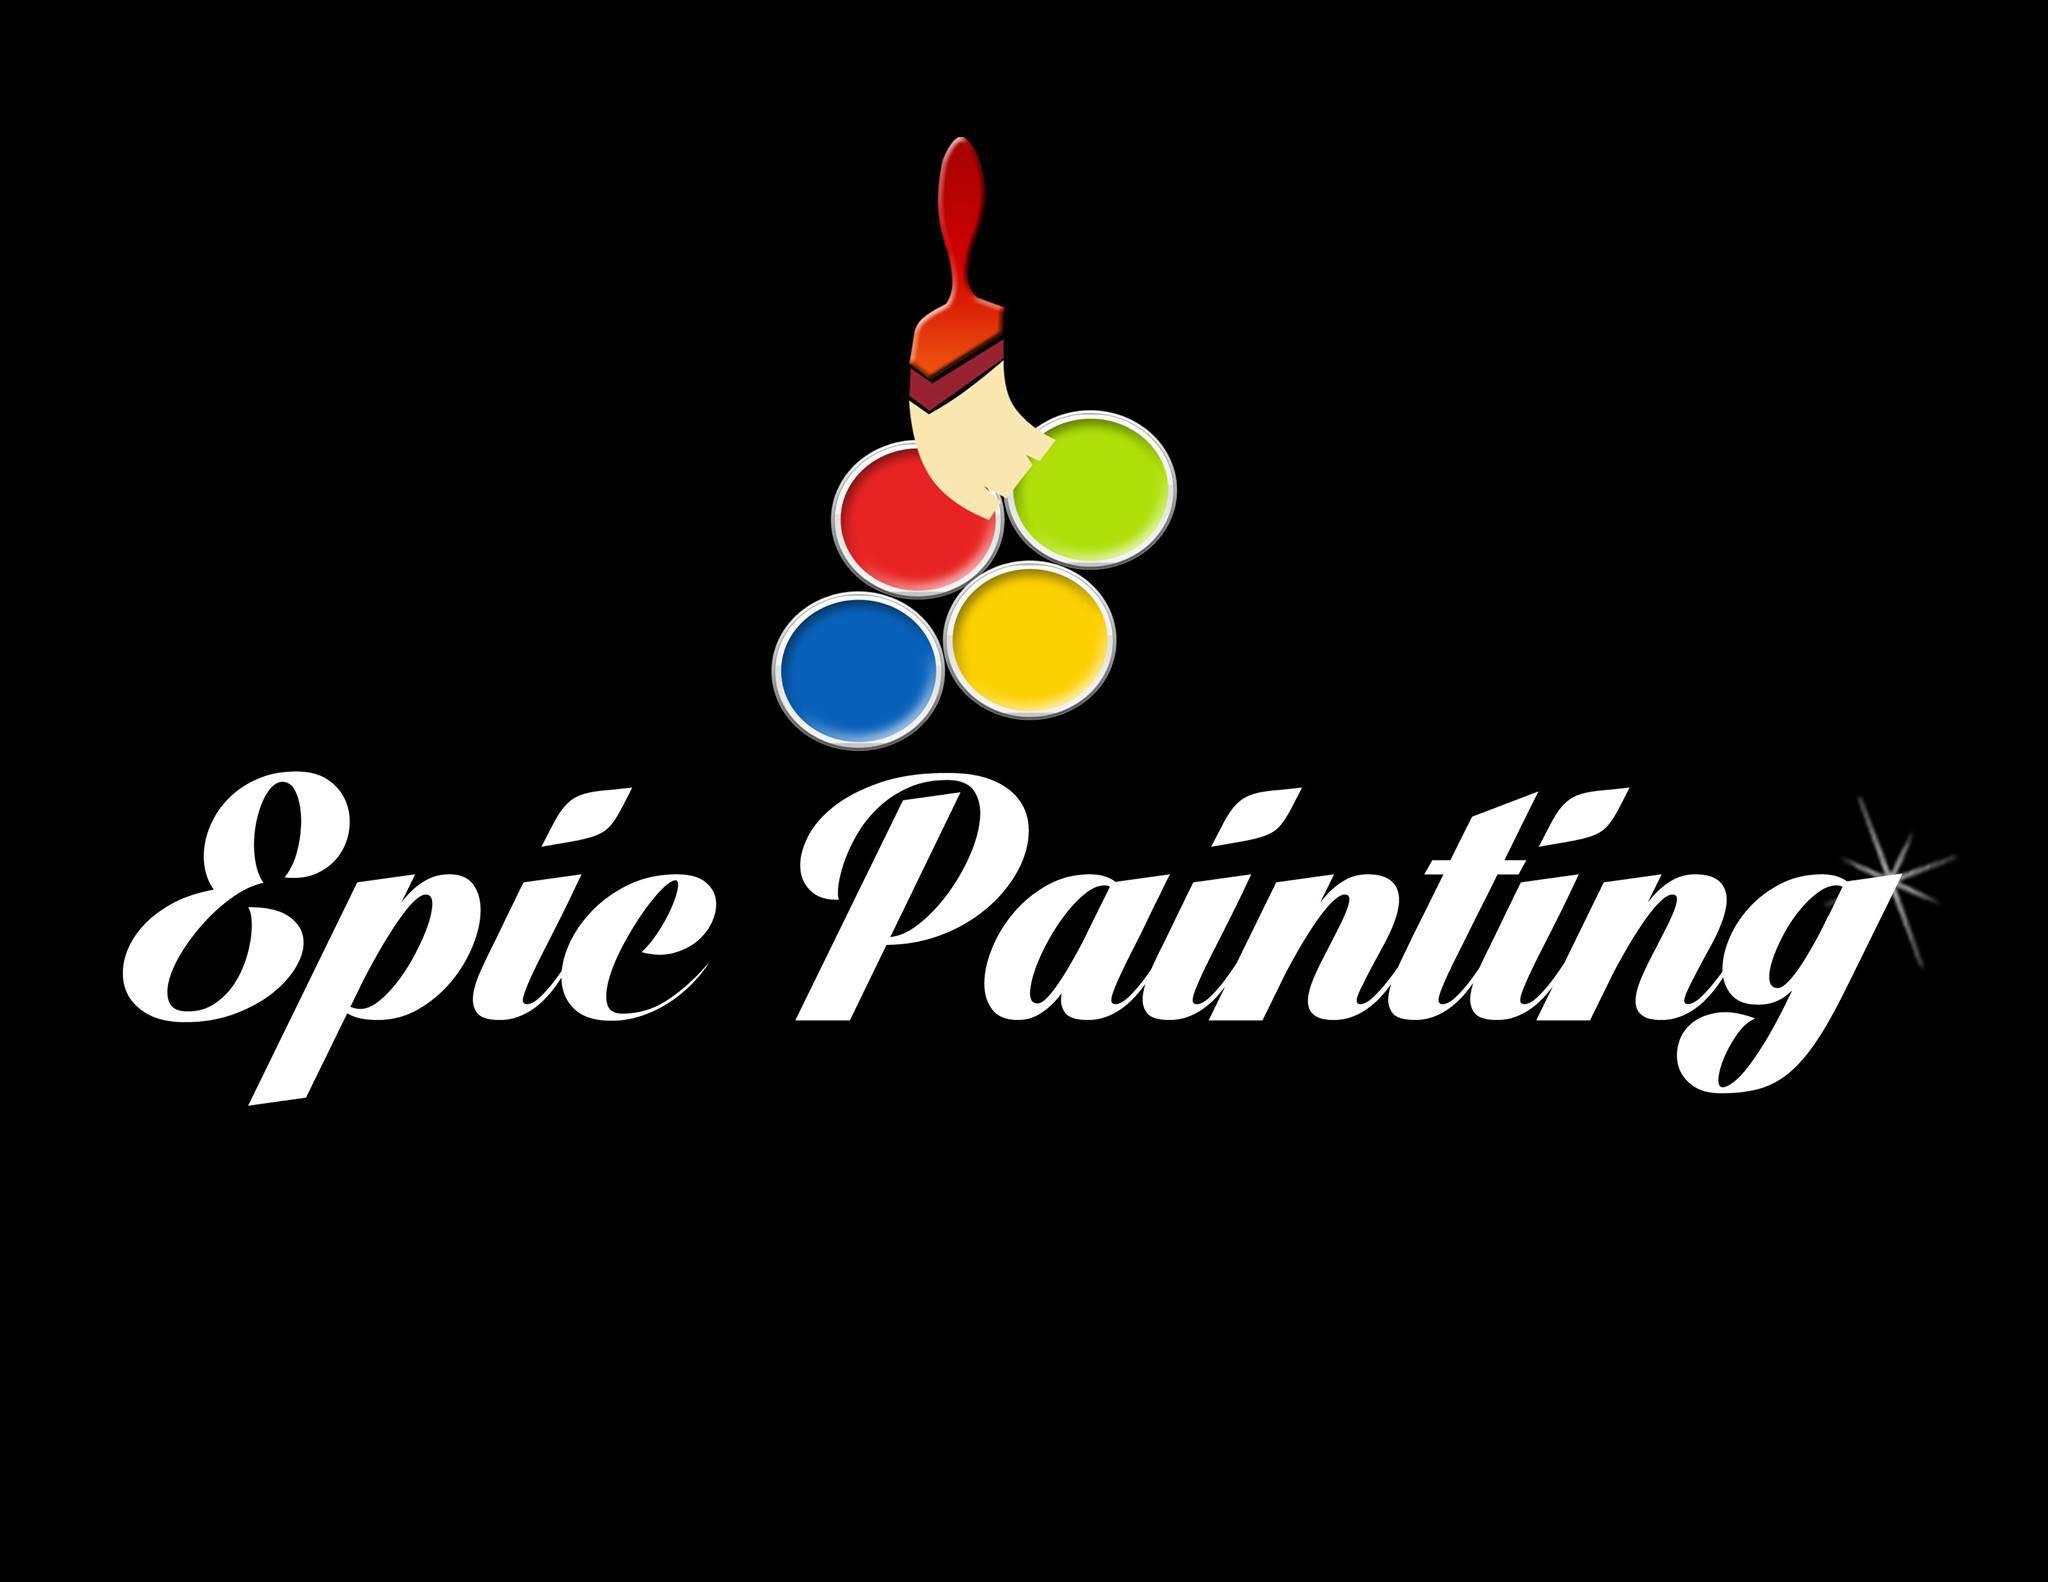 Epic Painting Logo